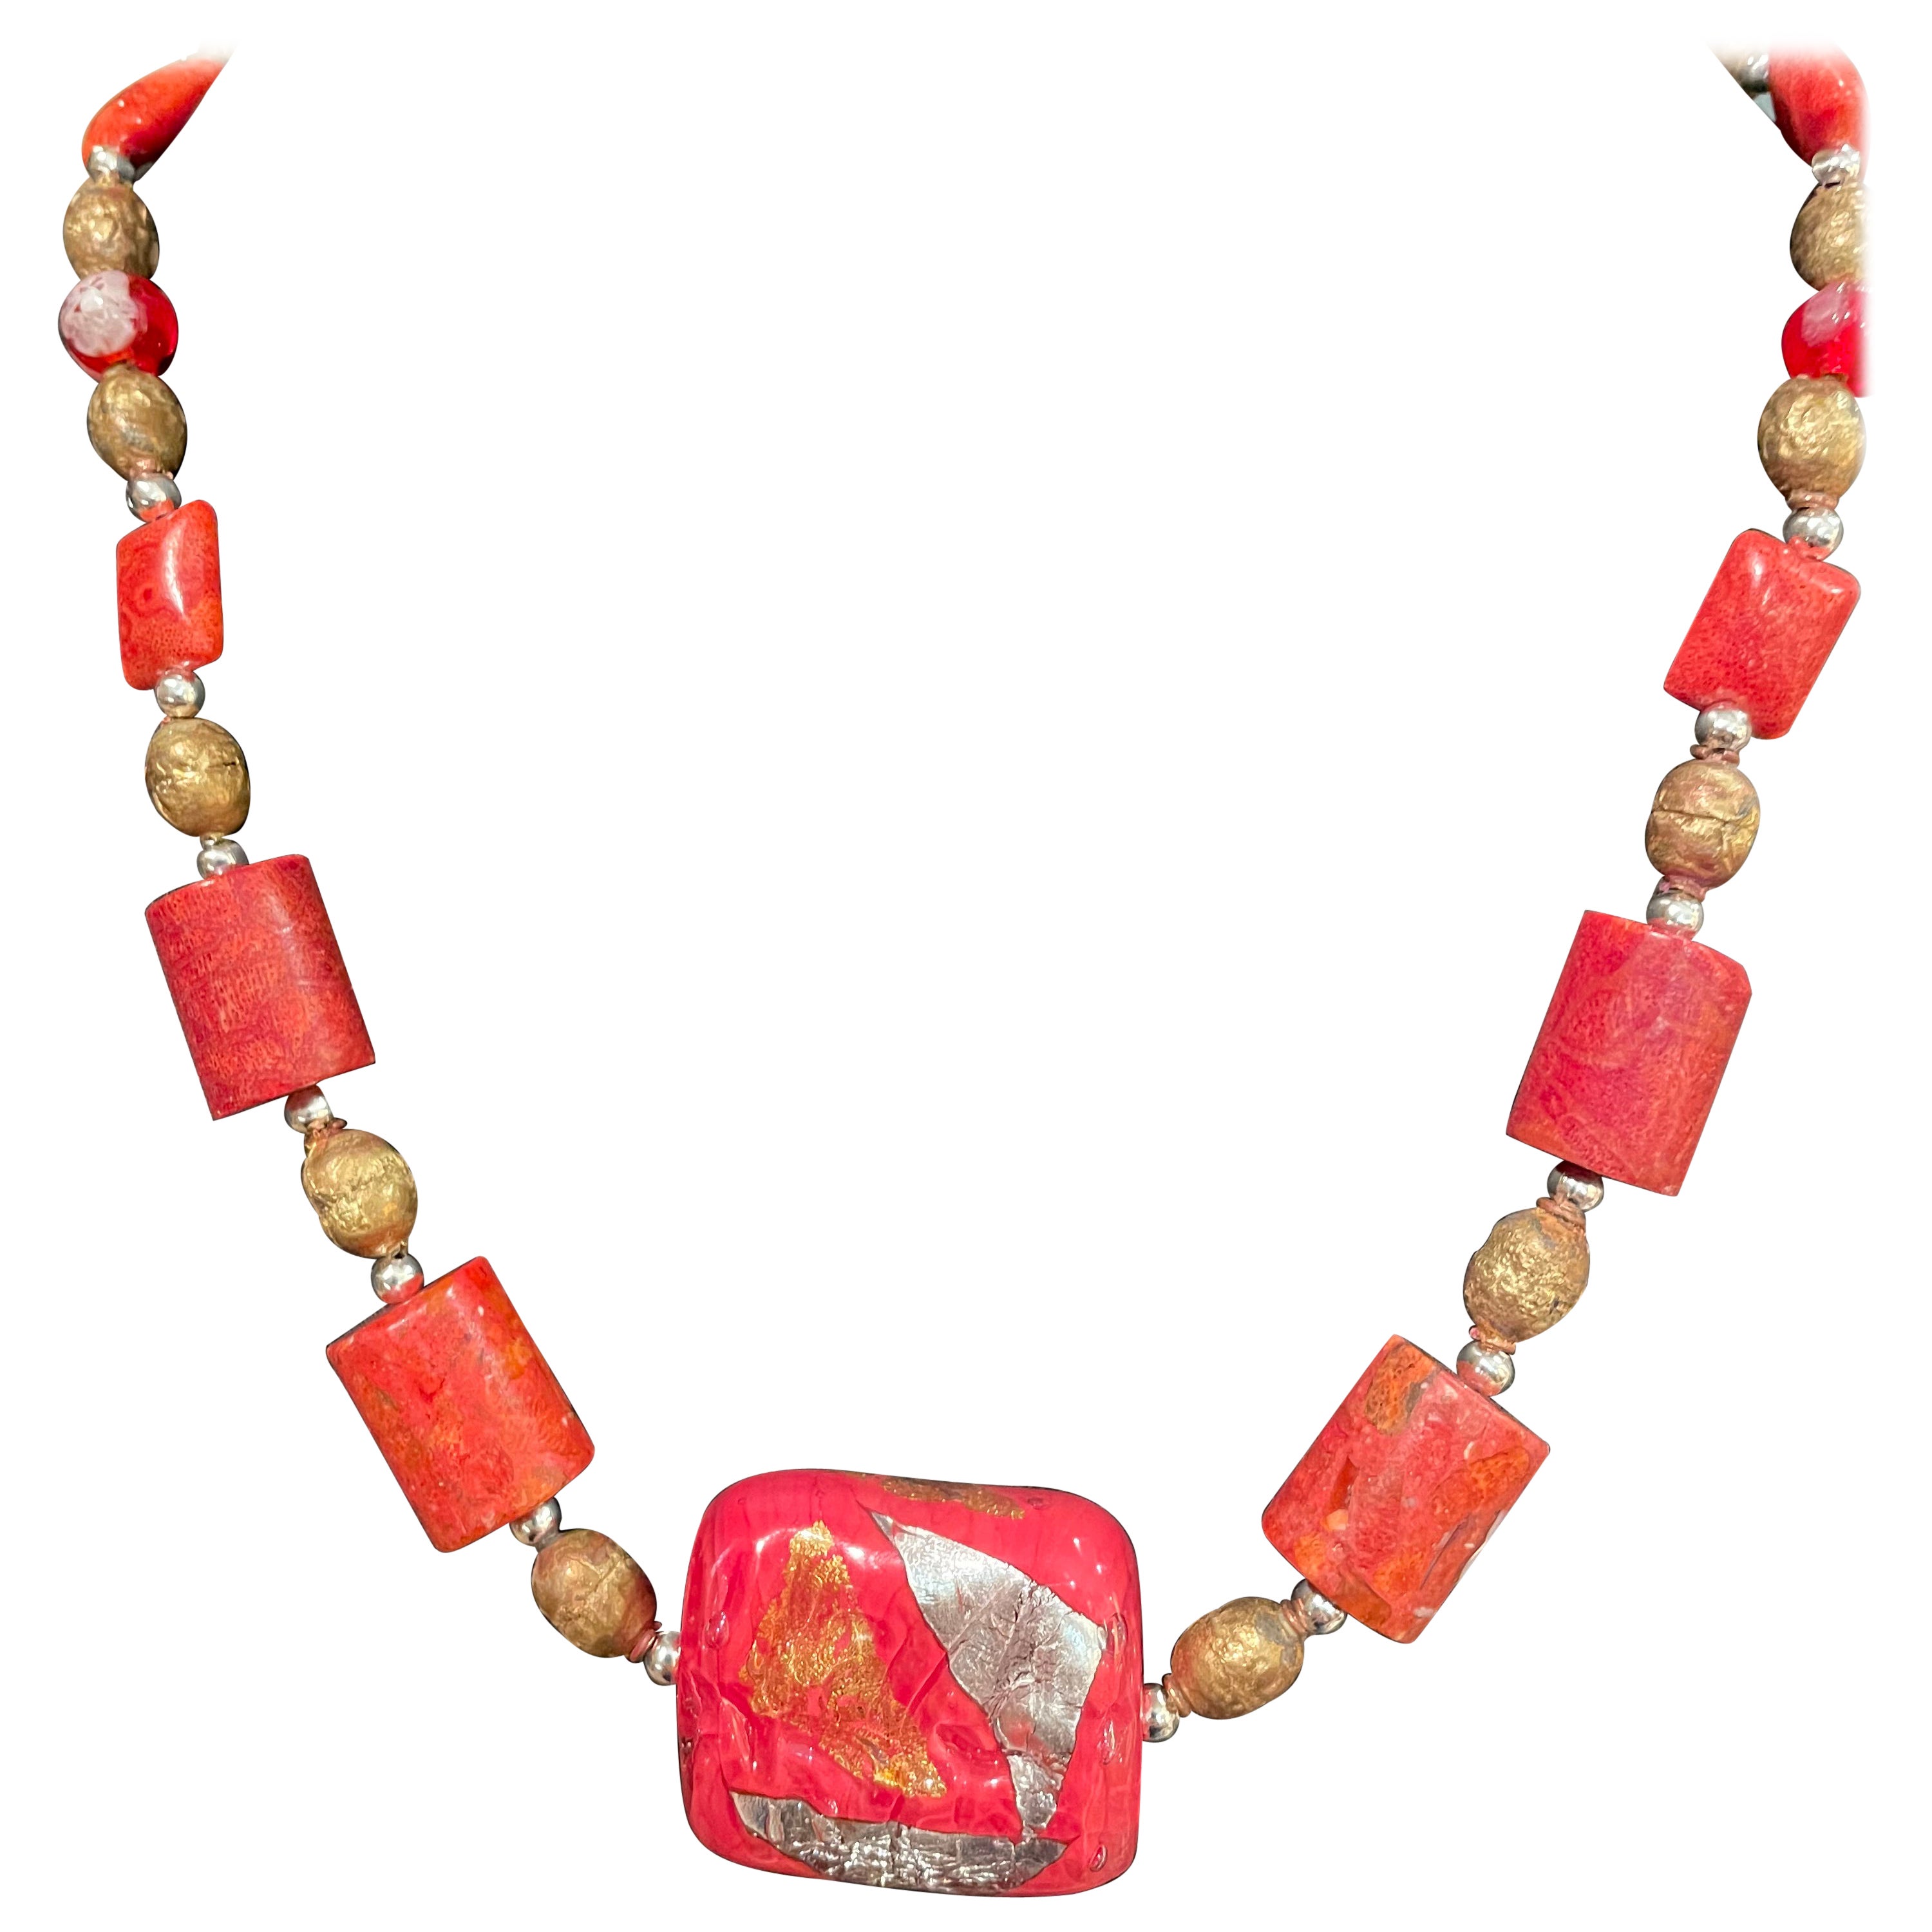 LB bietet eine handgefertigte, einzigartige venezianische Perlen- und Korallenhalskette mit Messing im Angebot